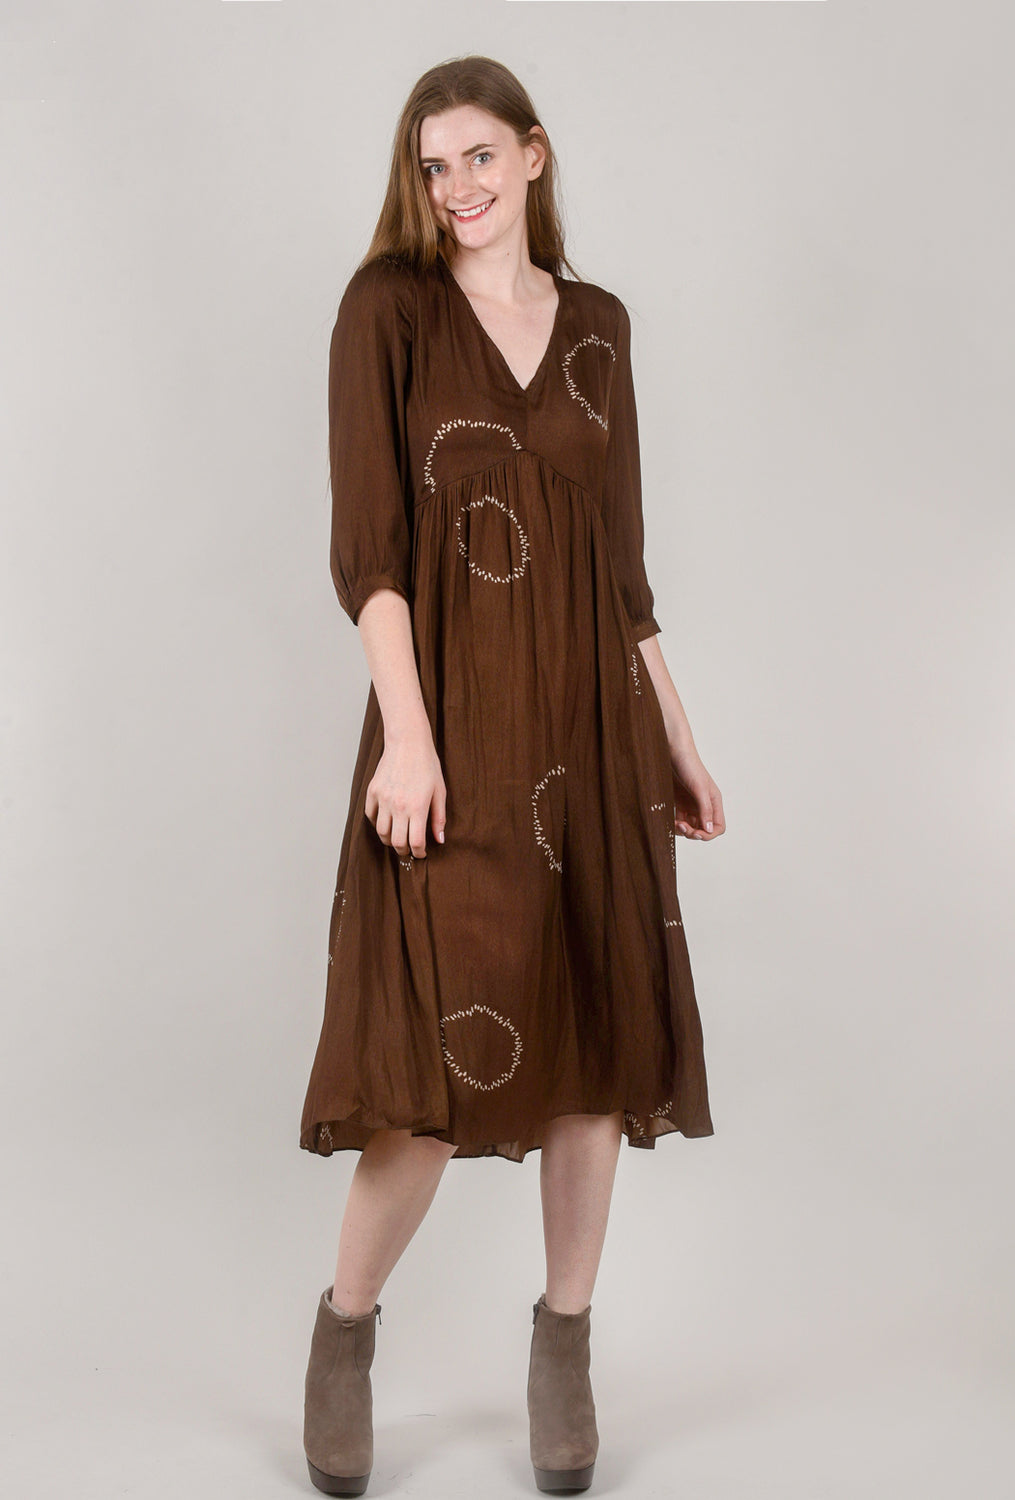 Dotted Circle Midi Dress, Chocolate